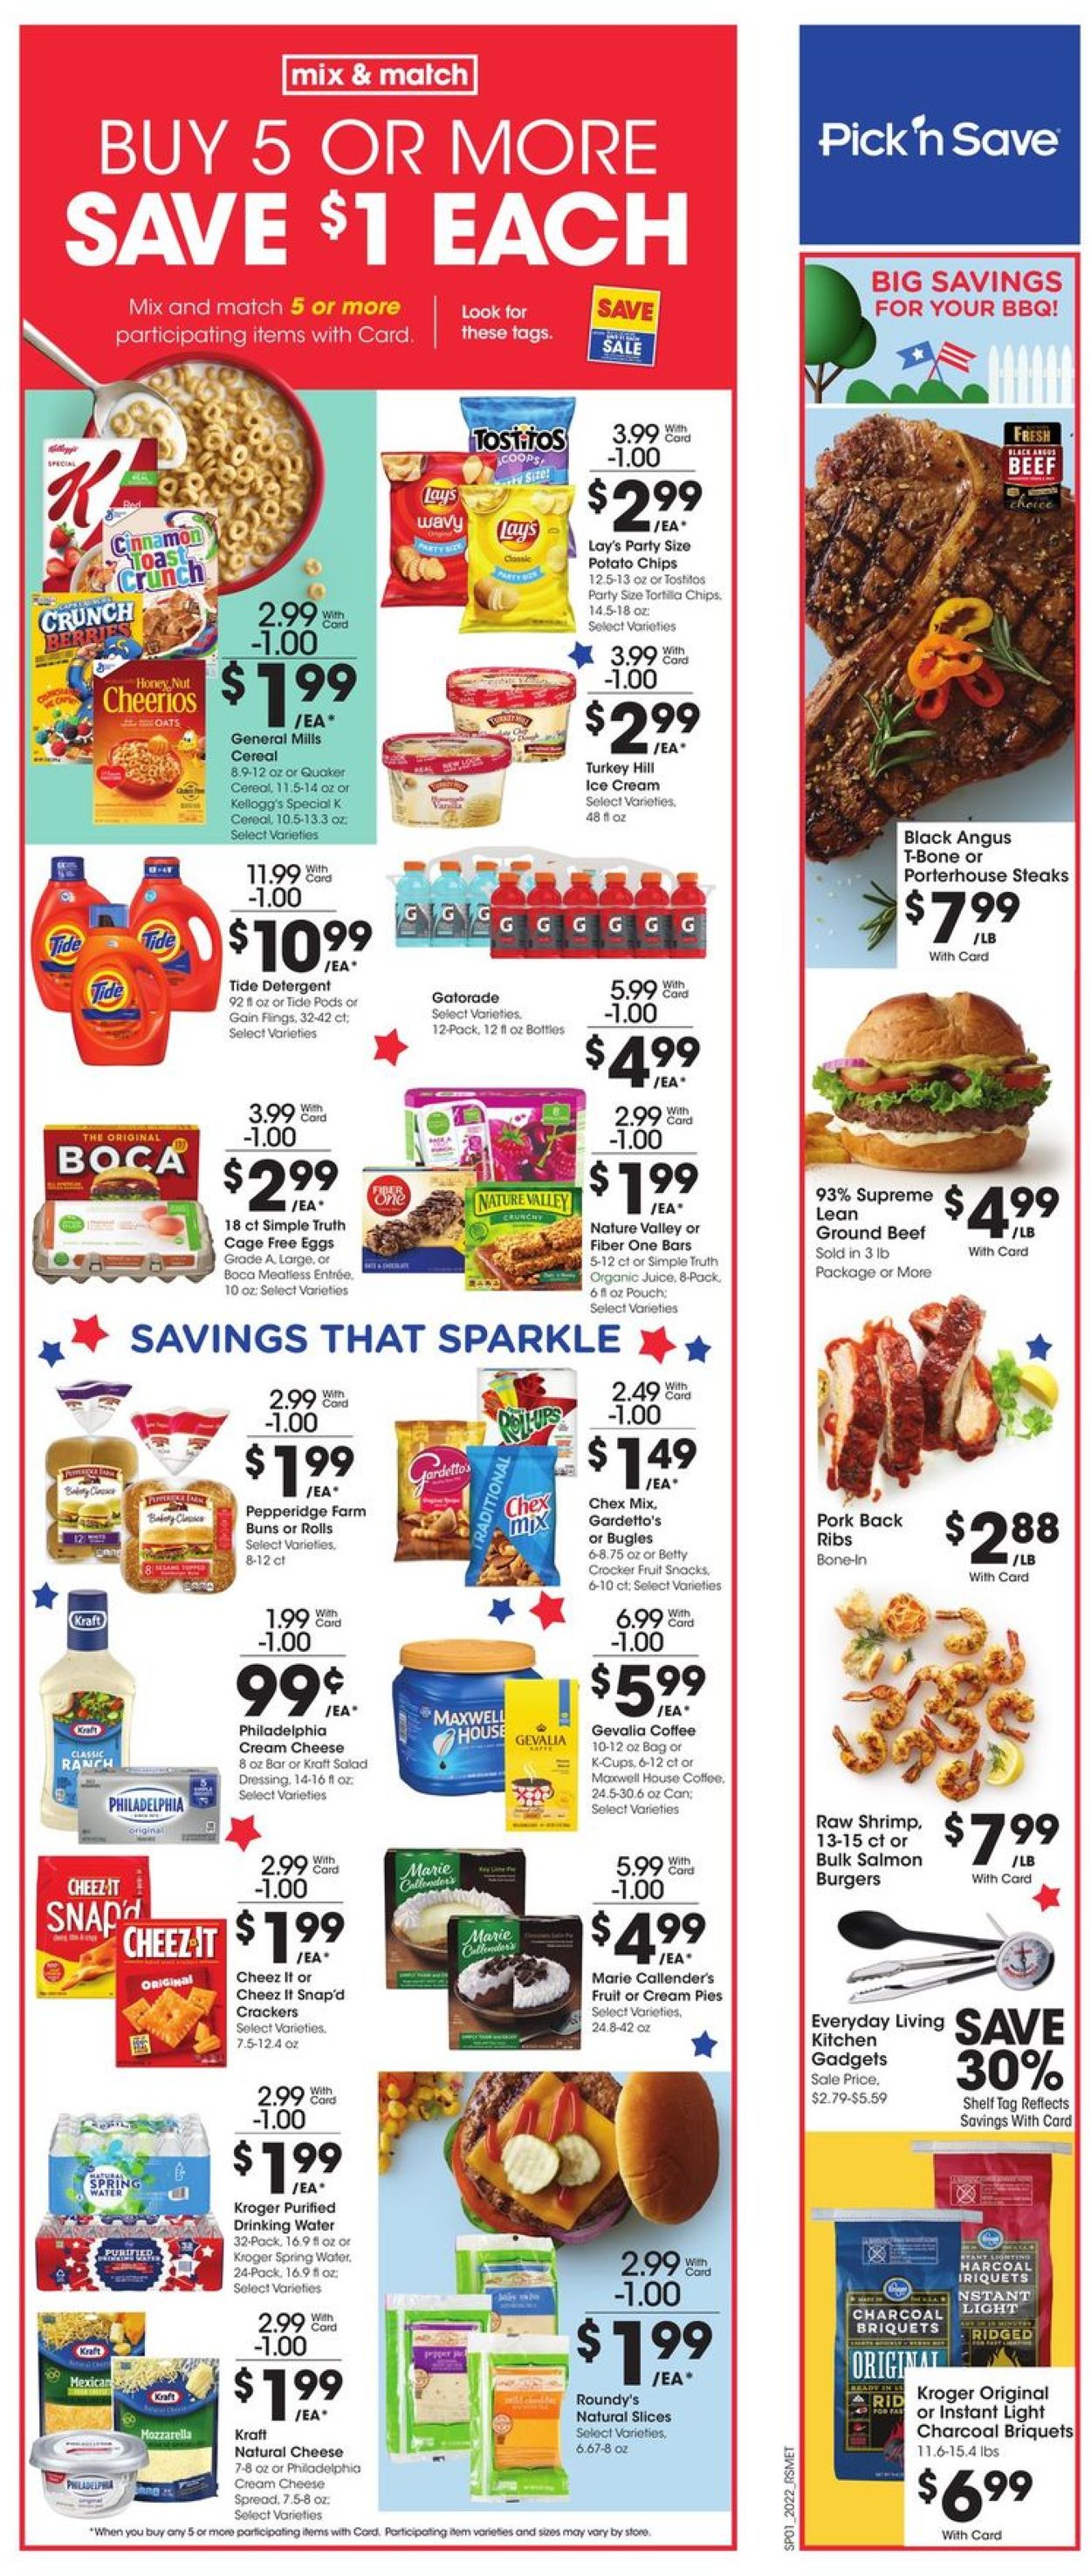 Pick ‘n Save Weekly Ad Circular - valid 07/01-07/07/2020 (Page 2)